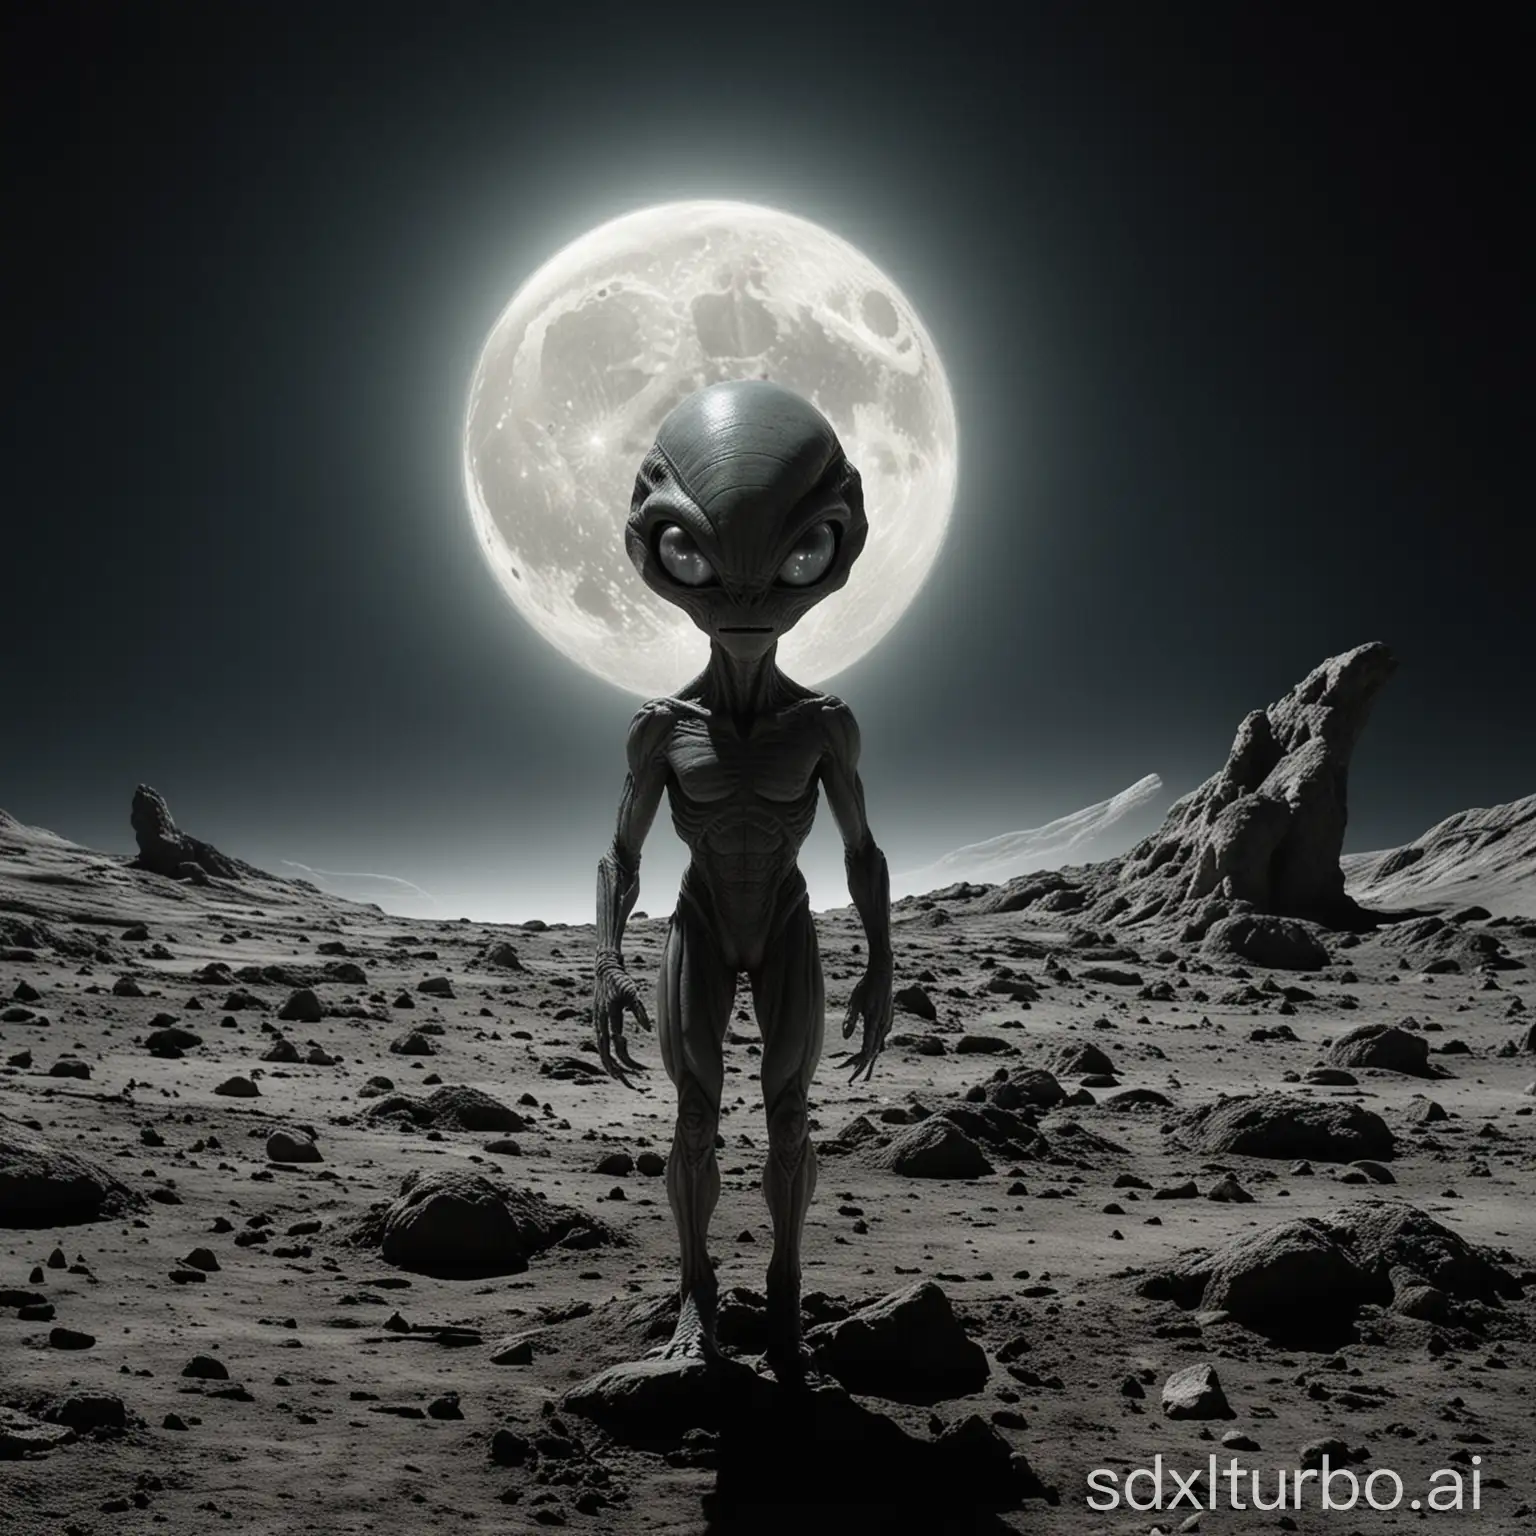 Alien in the moon